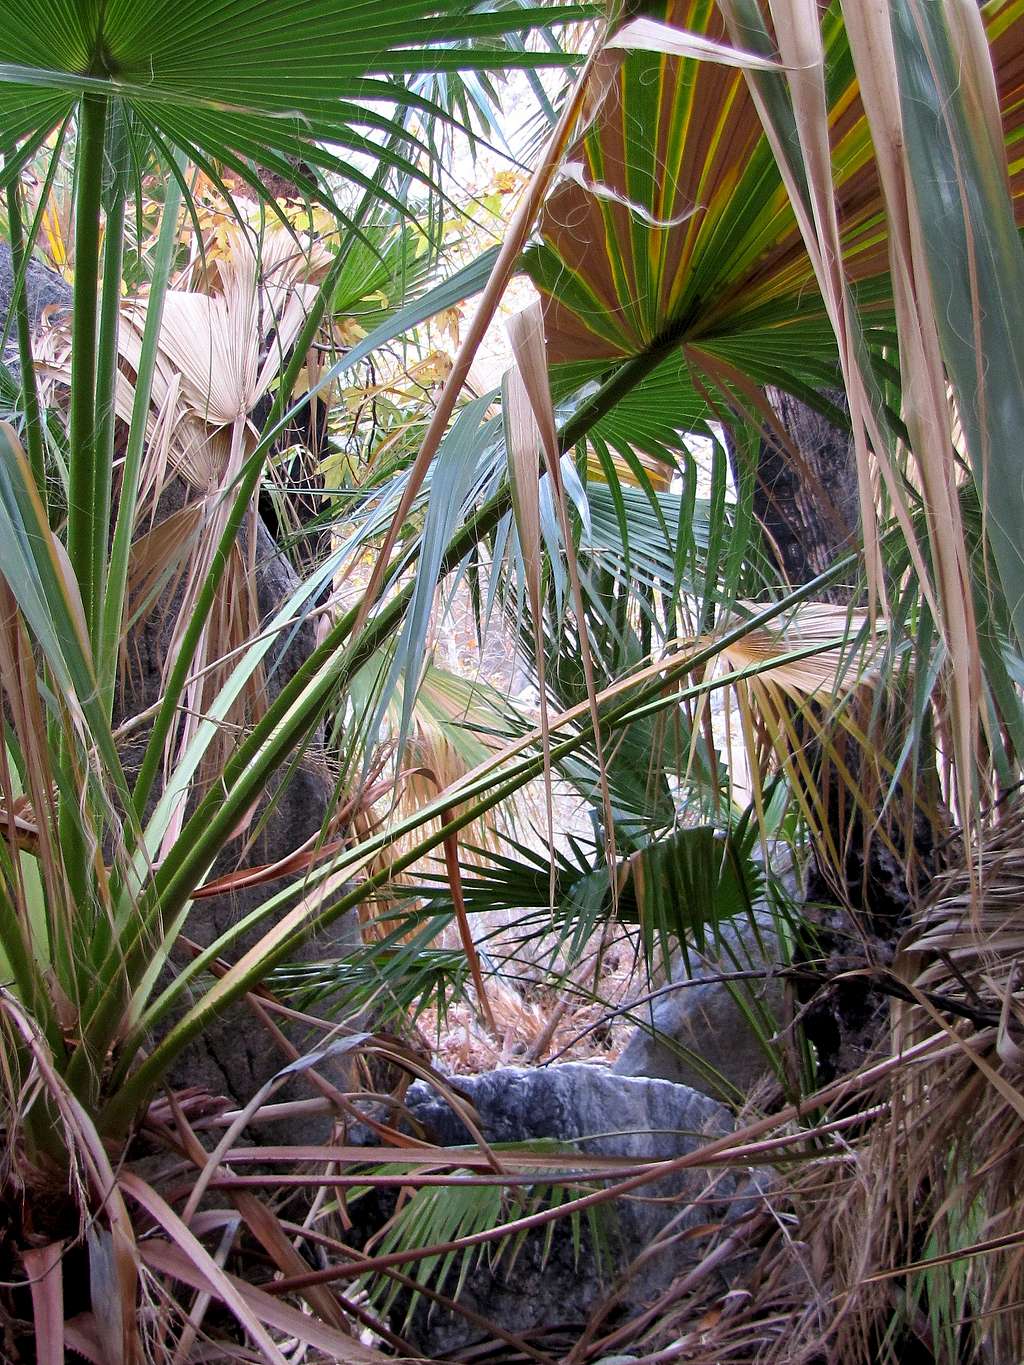 Bushwhacking among the palms